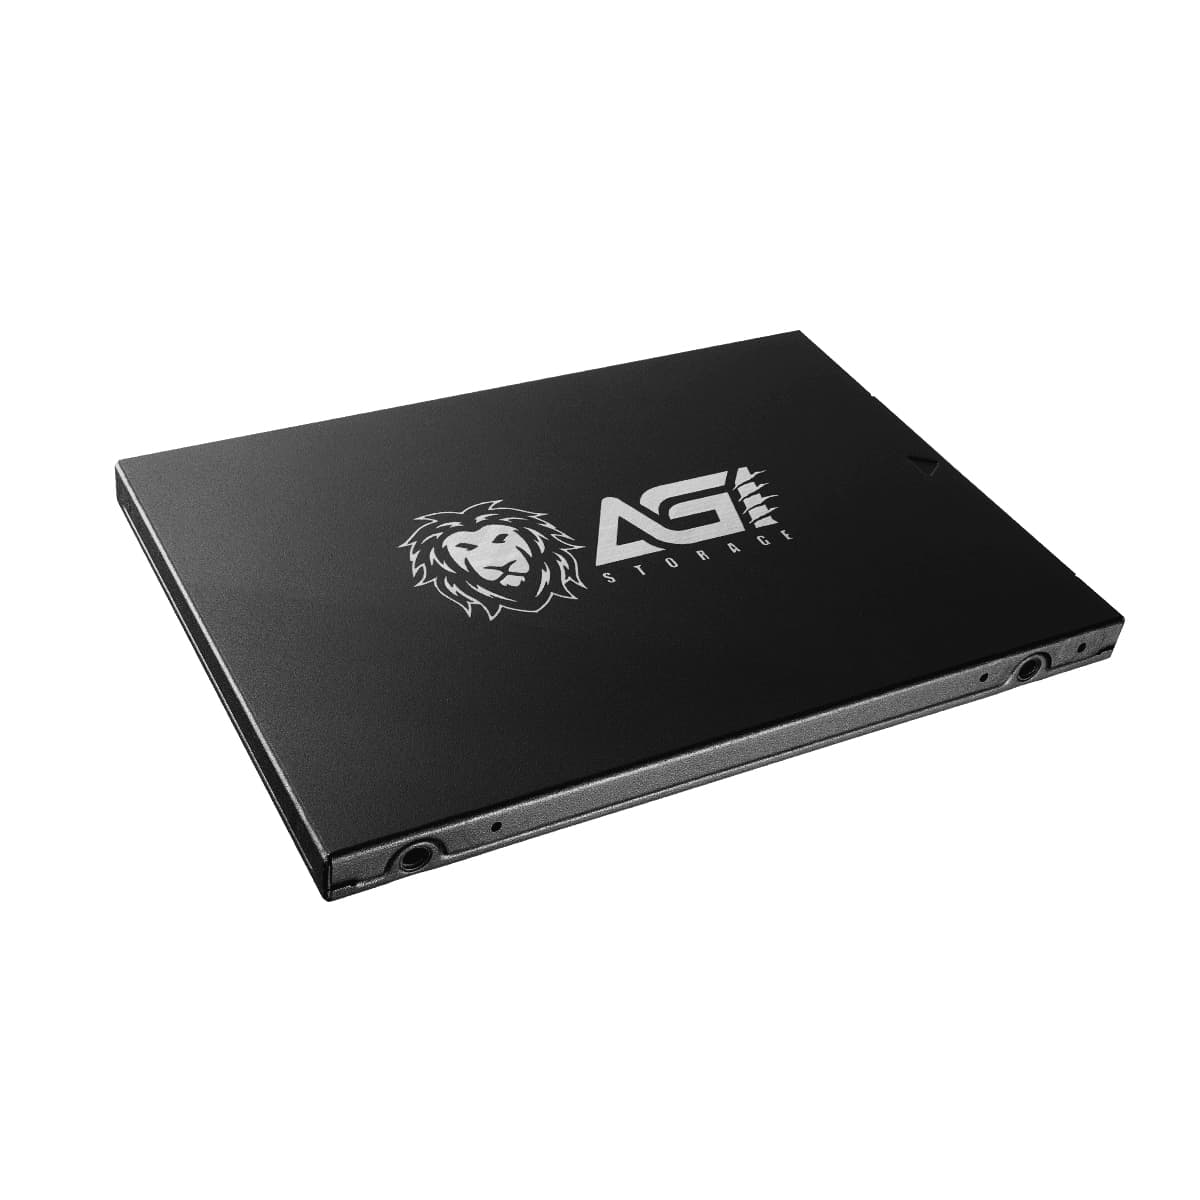 【未使用新品】AGI SSD 480GB     AGI480G17AI178